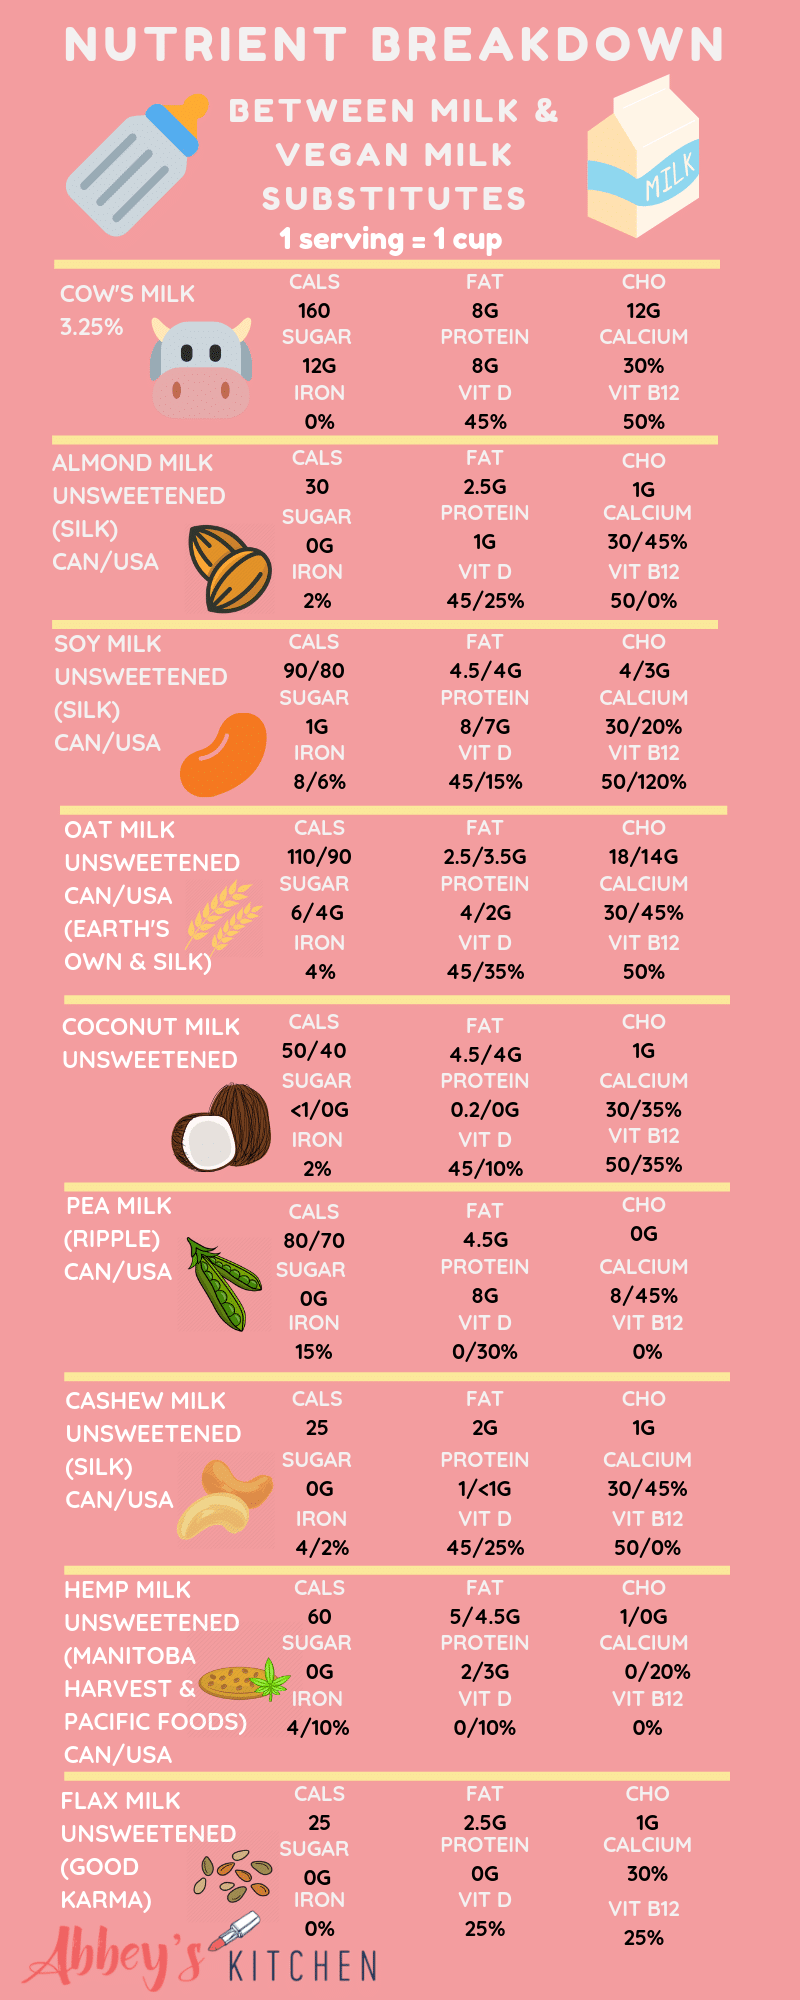 Infographic comparing vegan milk substitutes